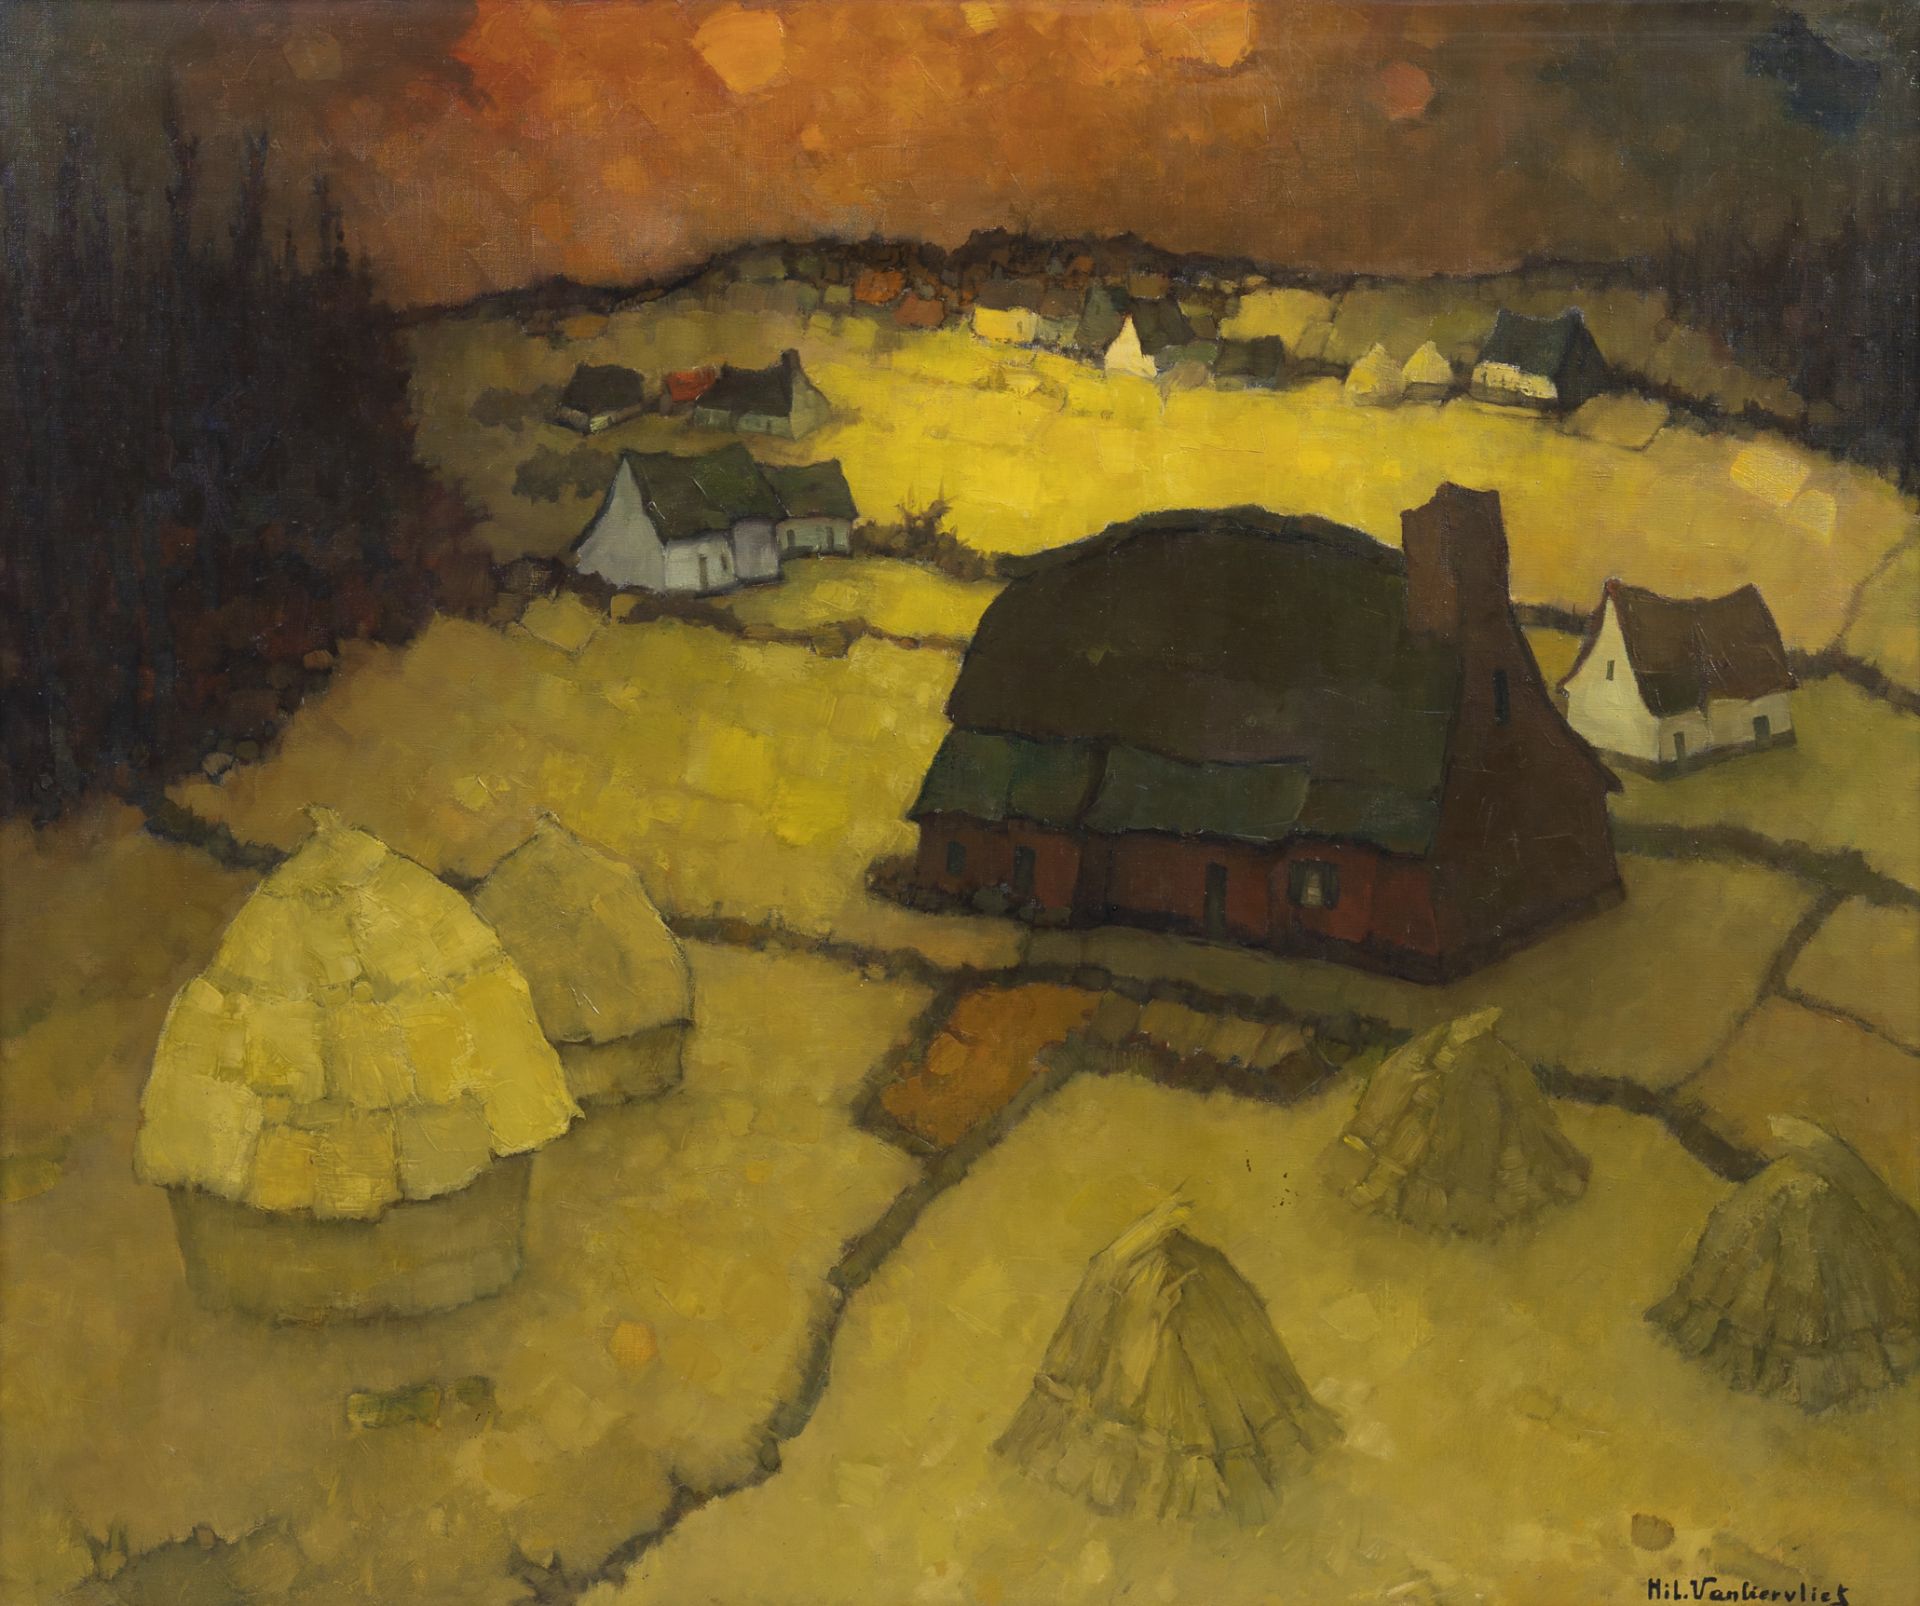 Hilaire Van Biervliet (1891-1982): 'Paysage', oil on canvas